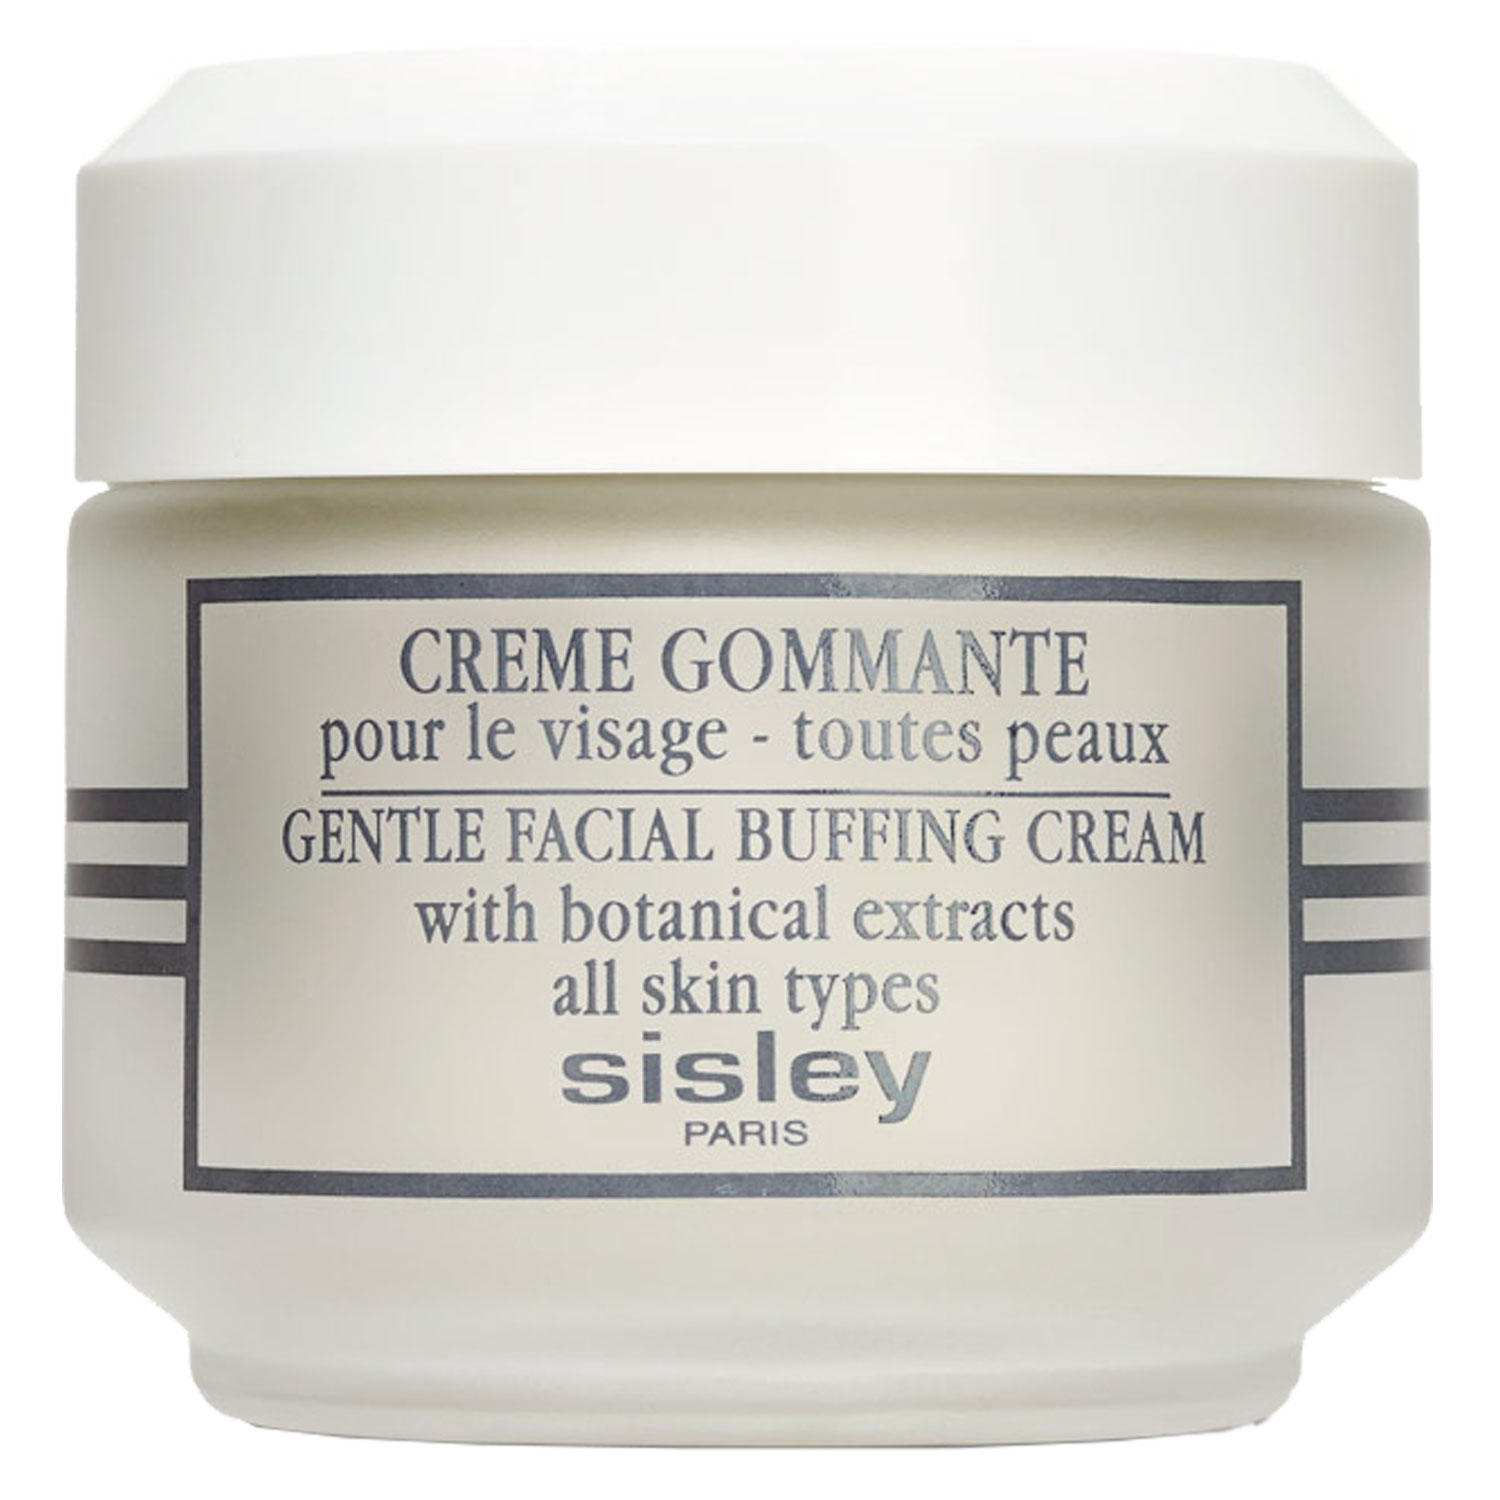 Crème Sisley pour Gommante visage le - Skincare